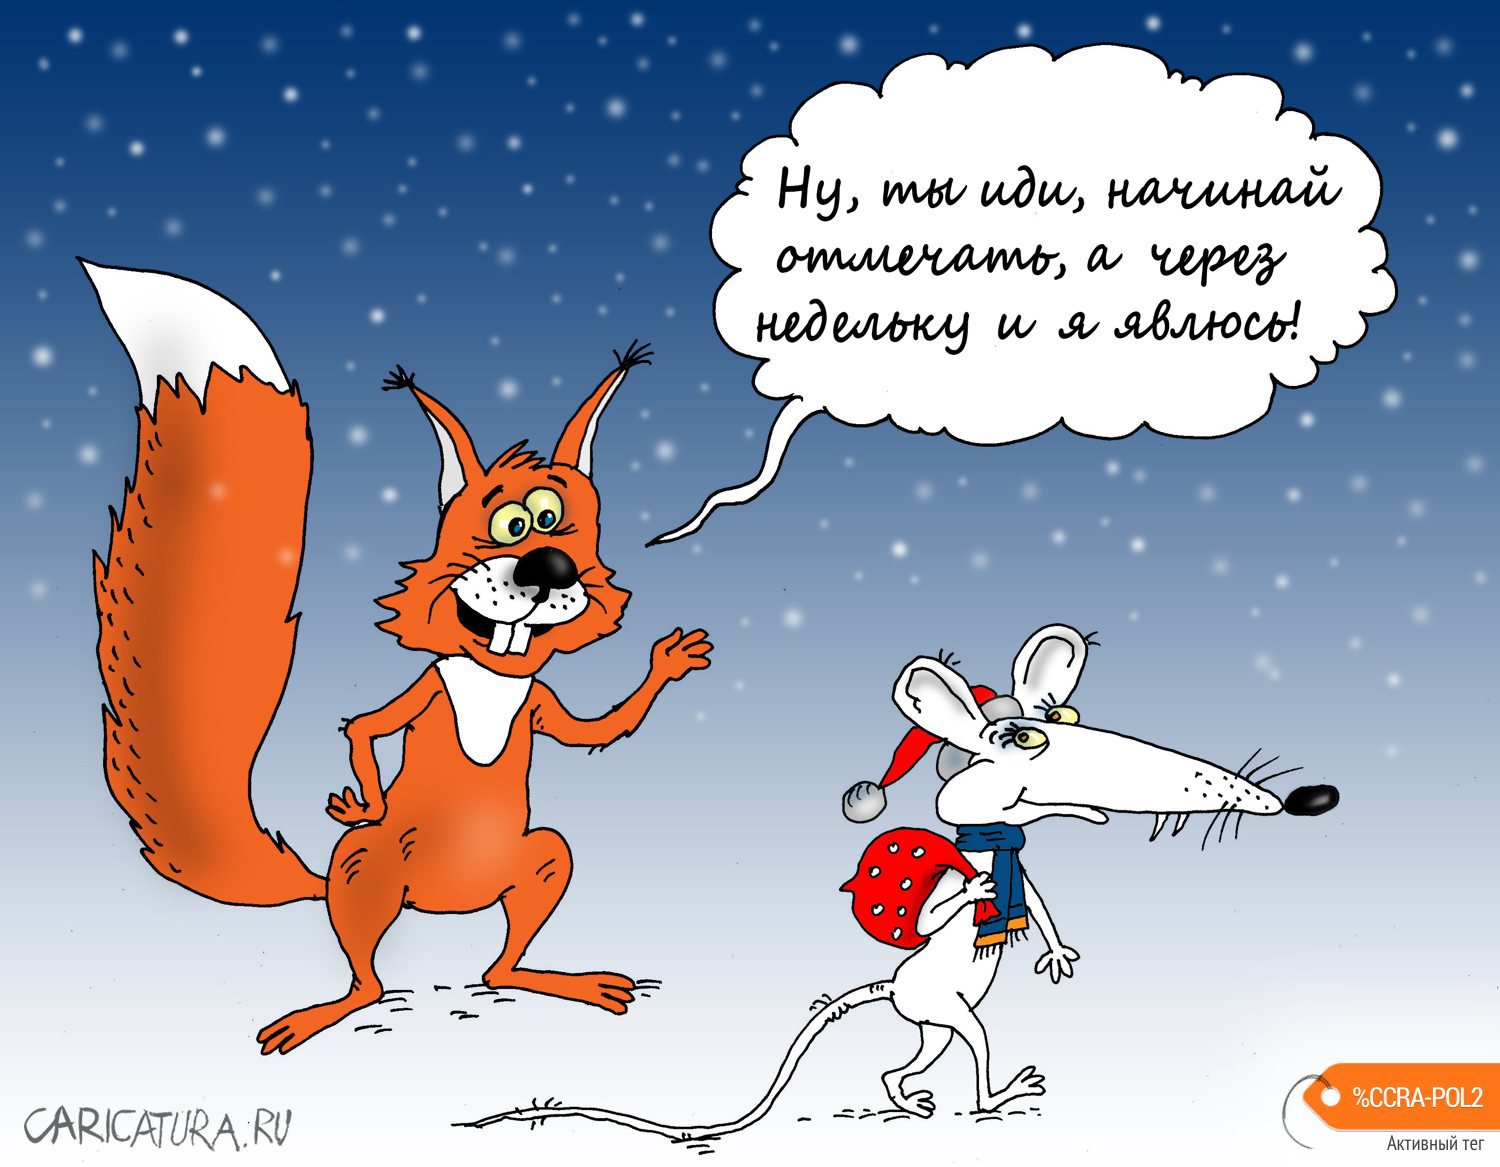 Карикатура "Белочка тоже придёт!", Валерий Тарасенко